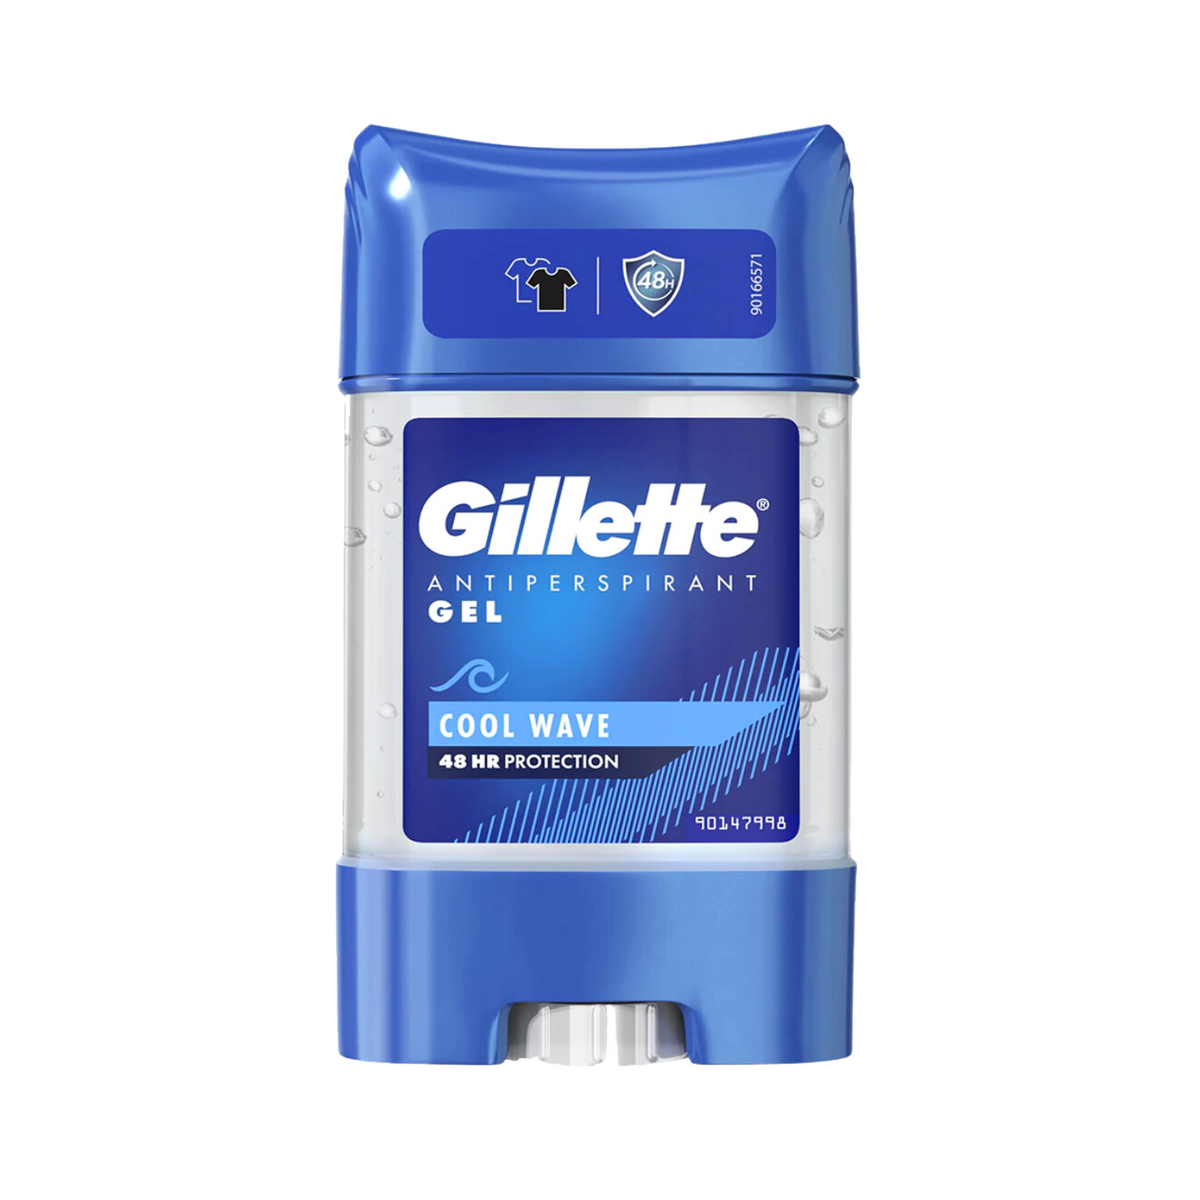 gillette-antiperspirant-gel-cool-wave-48h-protection-70ml